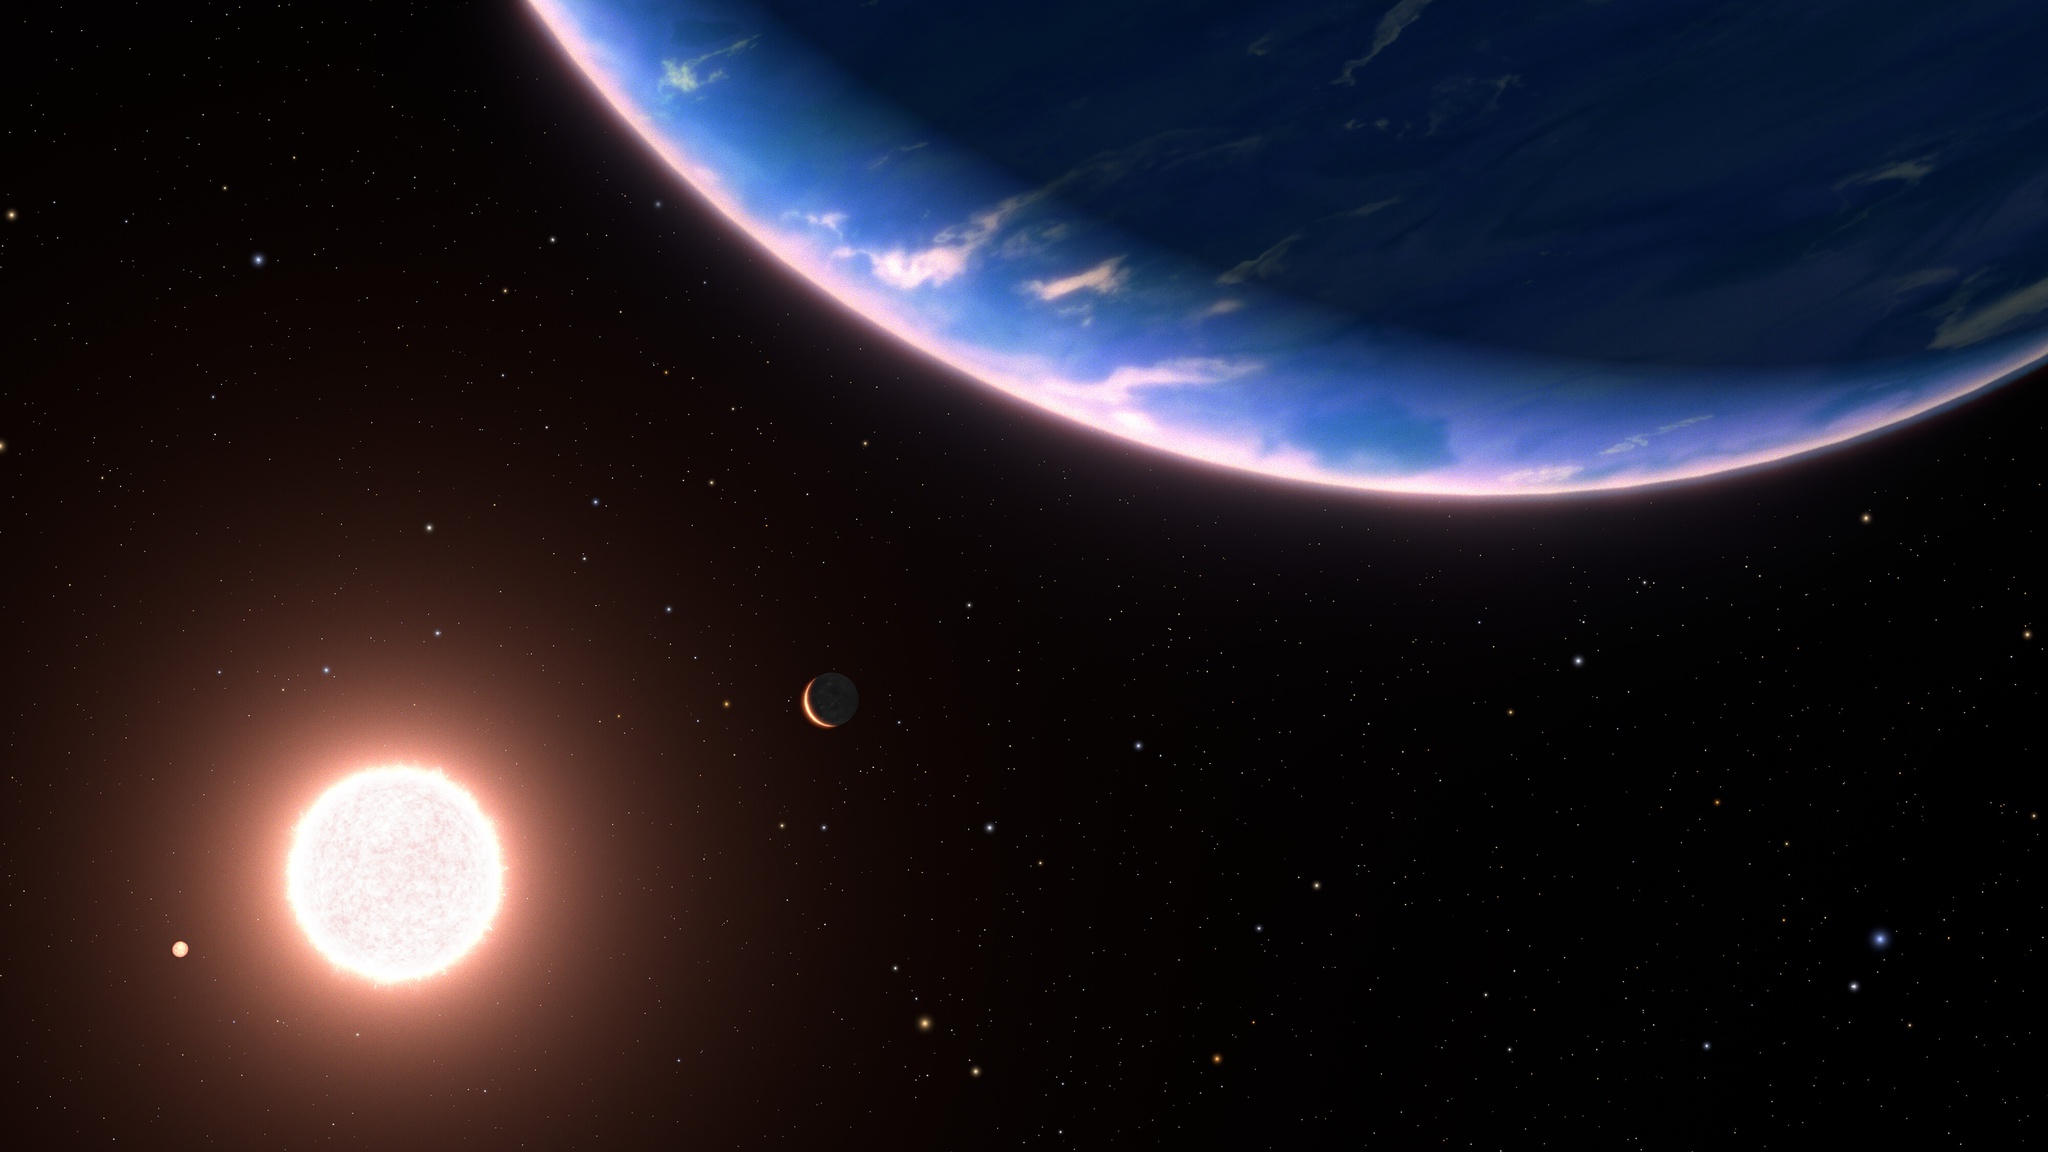 El telescopio Hubble detecta el exoplaneta más pequeño que contiene vapor de agua en la atmósfera |  Astrofísica